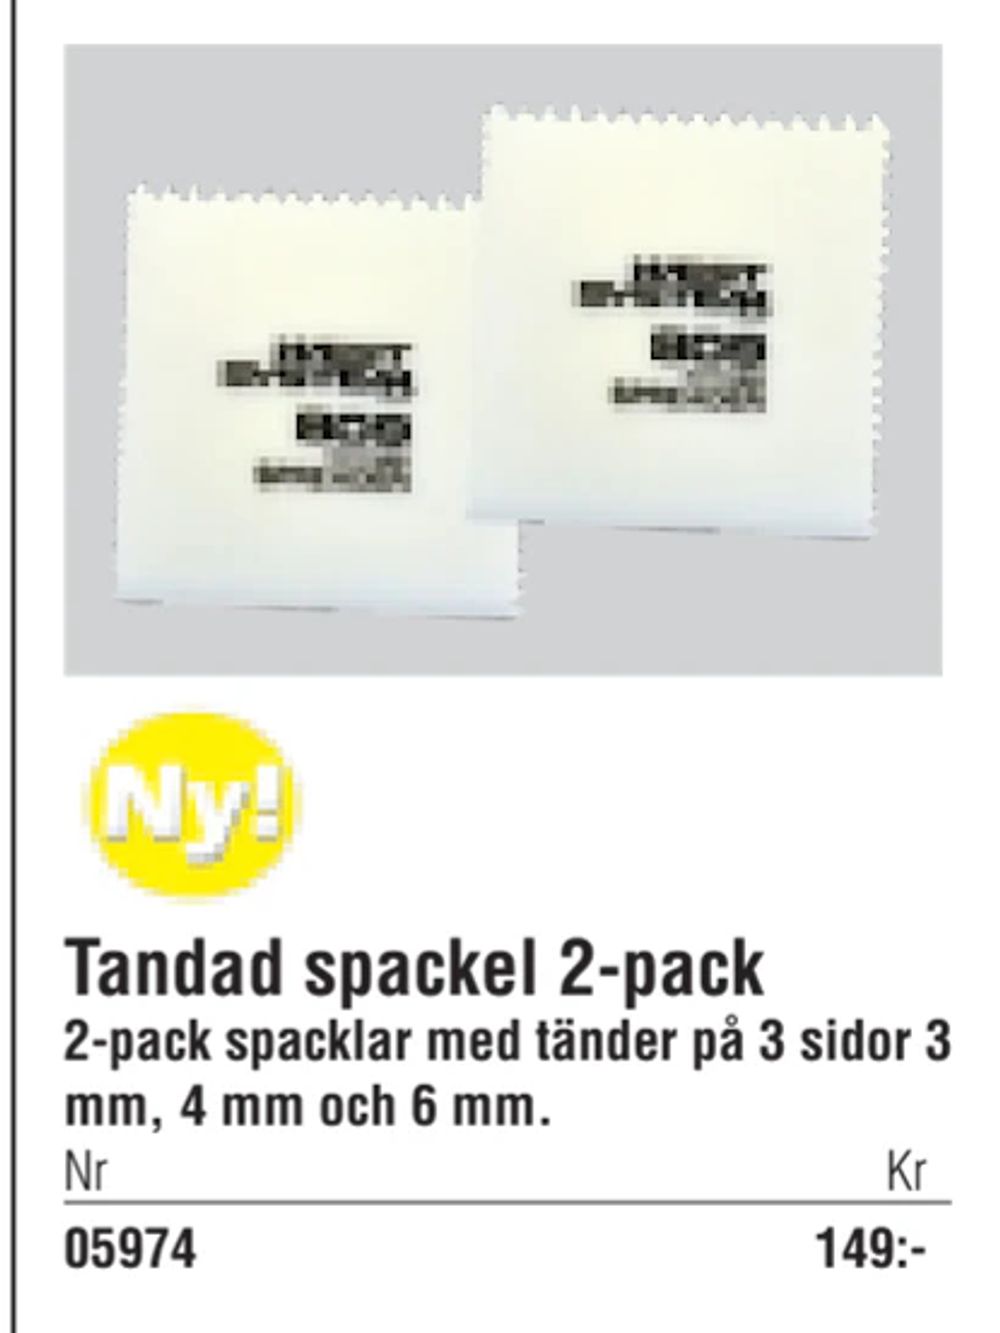 Erbjudanden på Tandad spackel 2-pack från Erlandsons Brygga för 149 kr